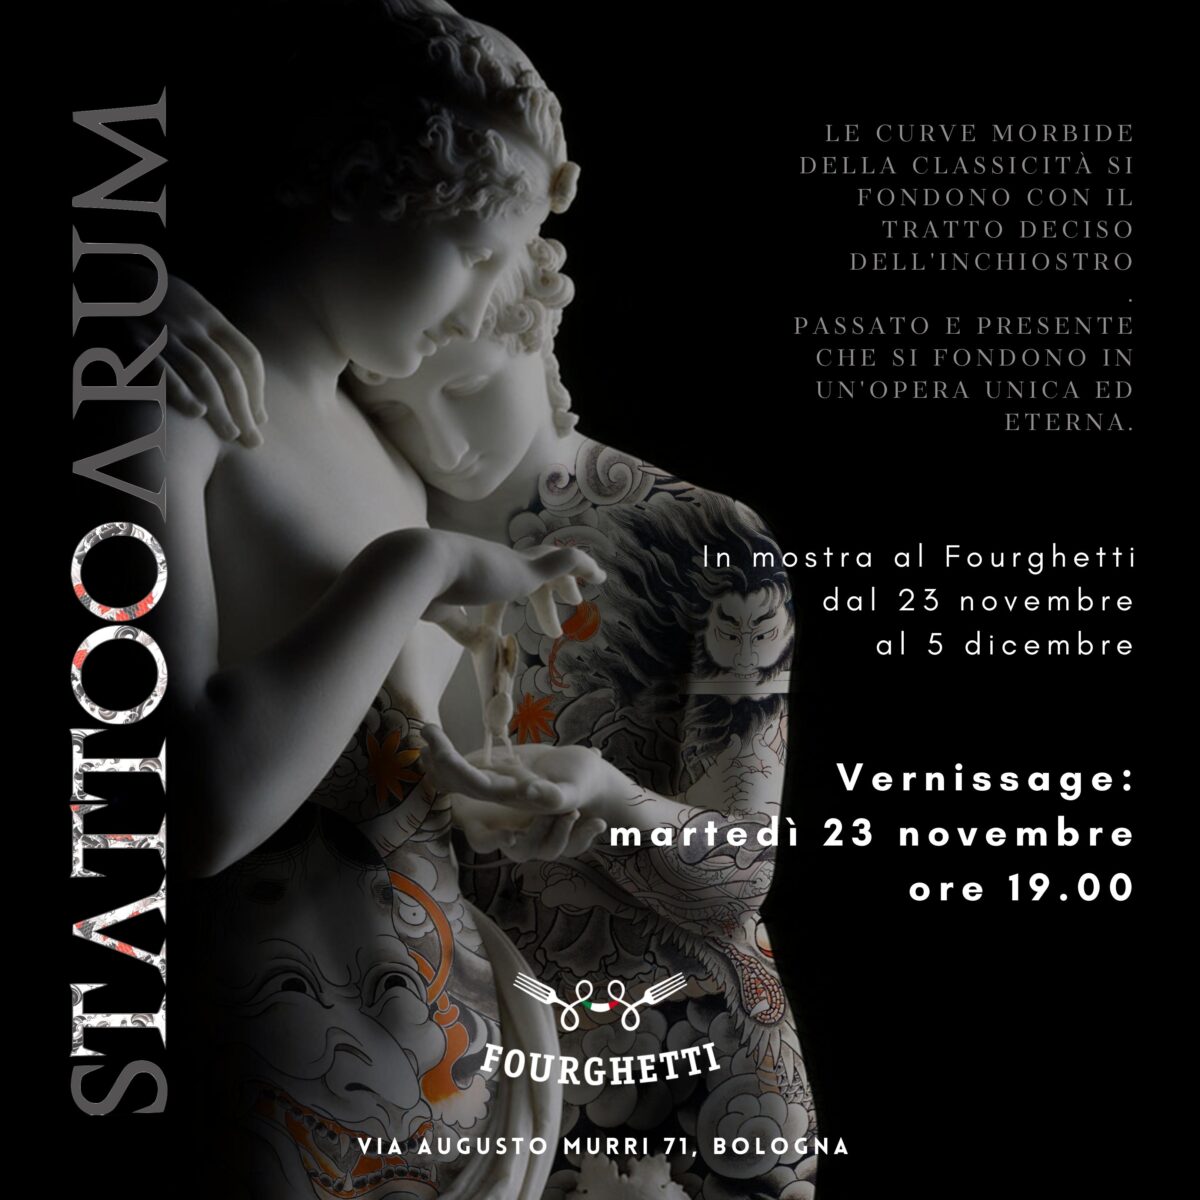 Stattooarum – in esposizione al Fourghetti dal 23 novembre